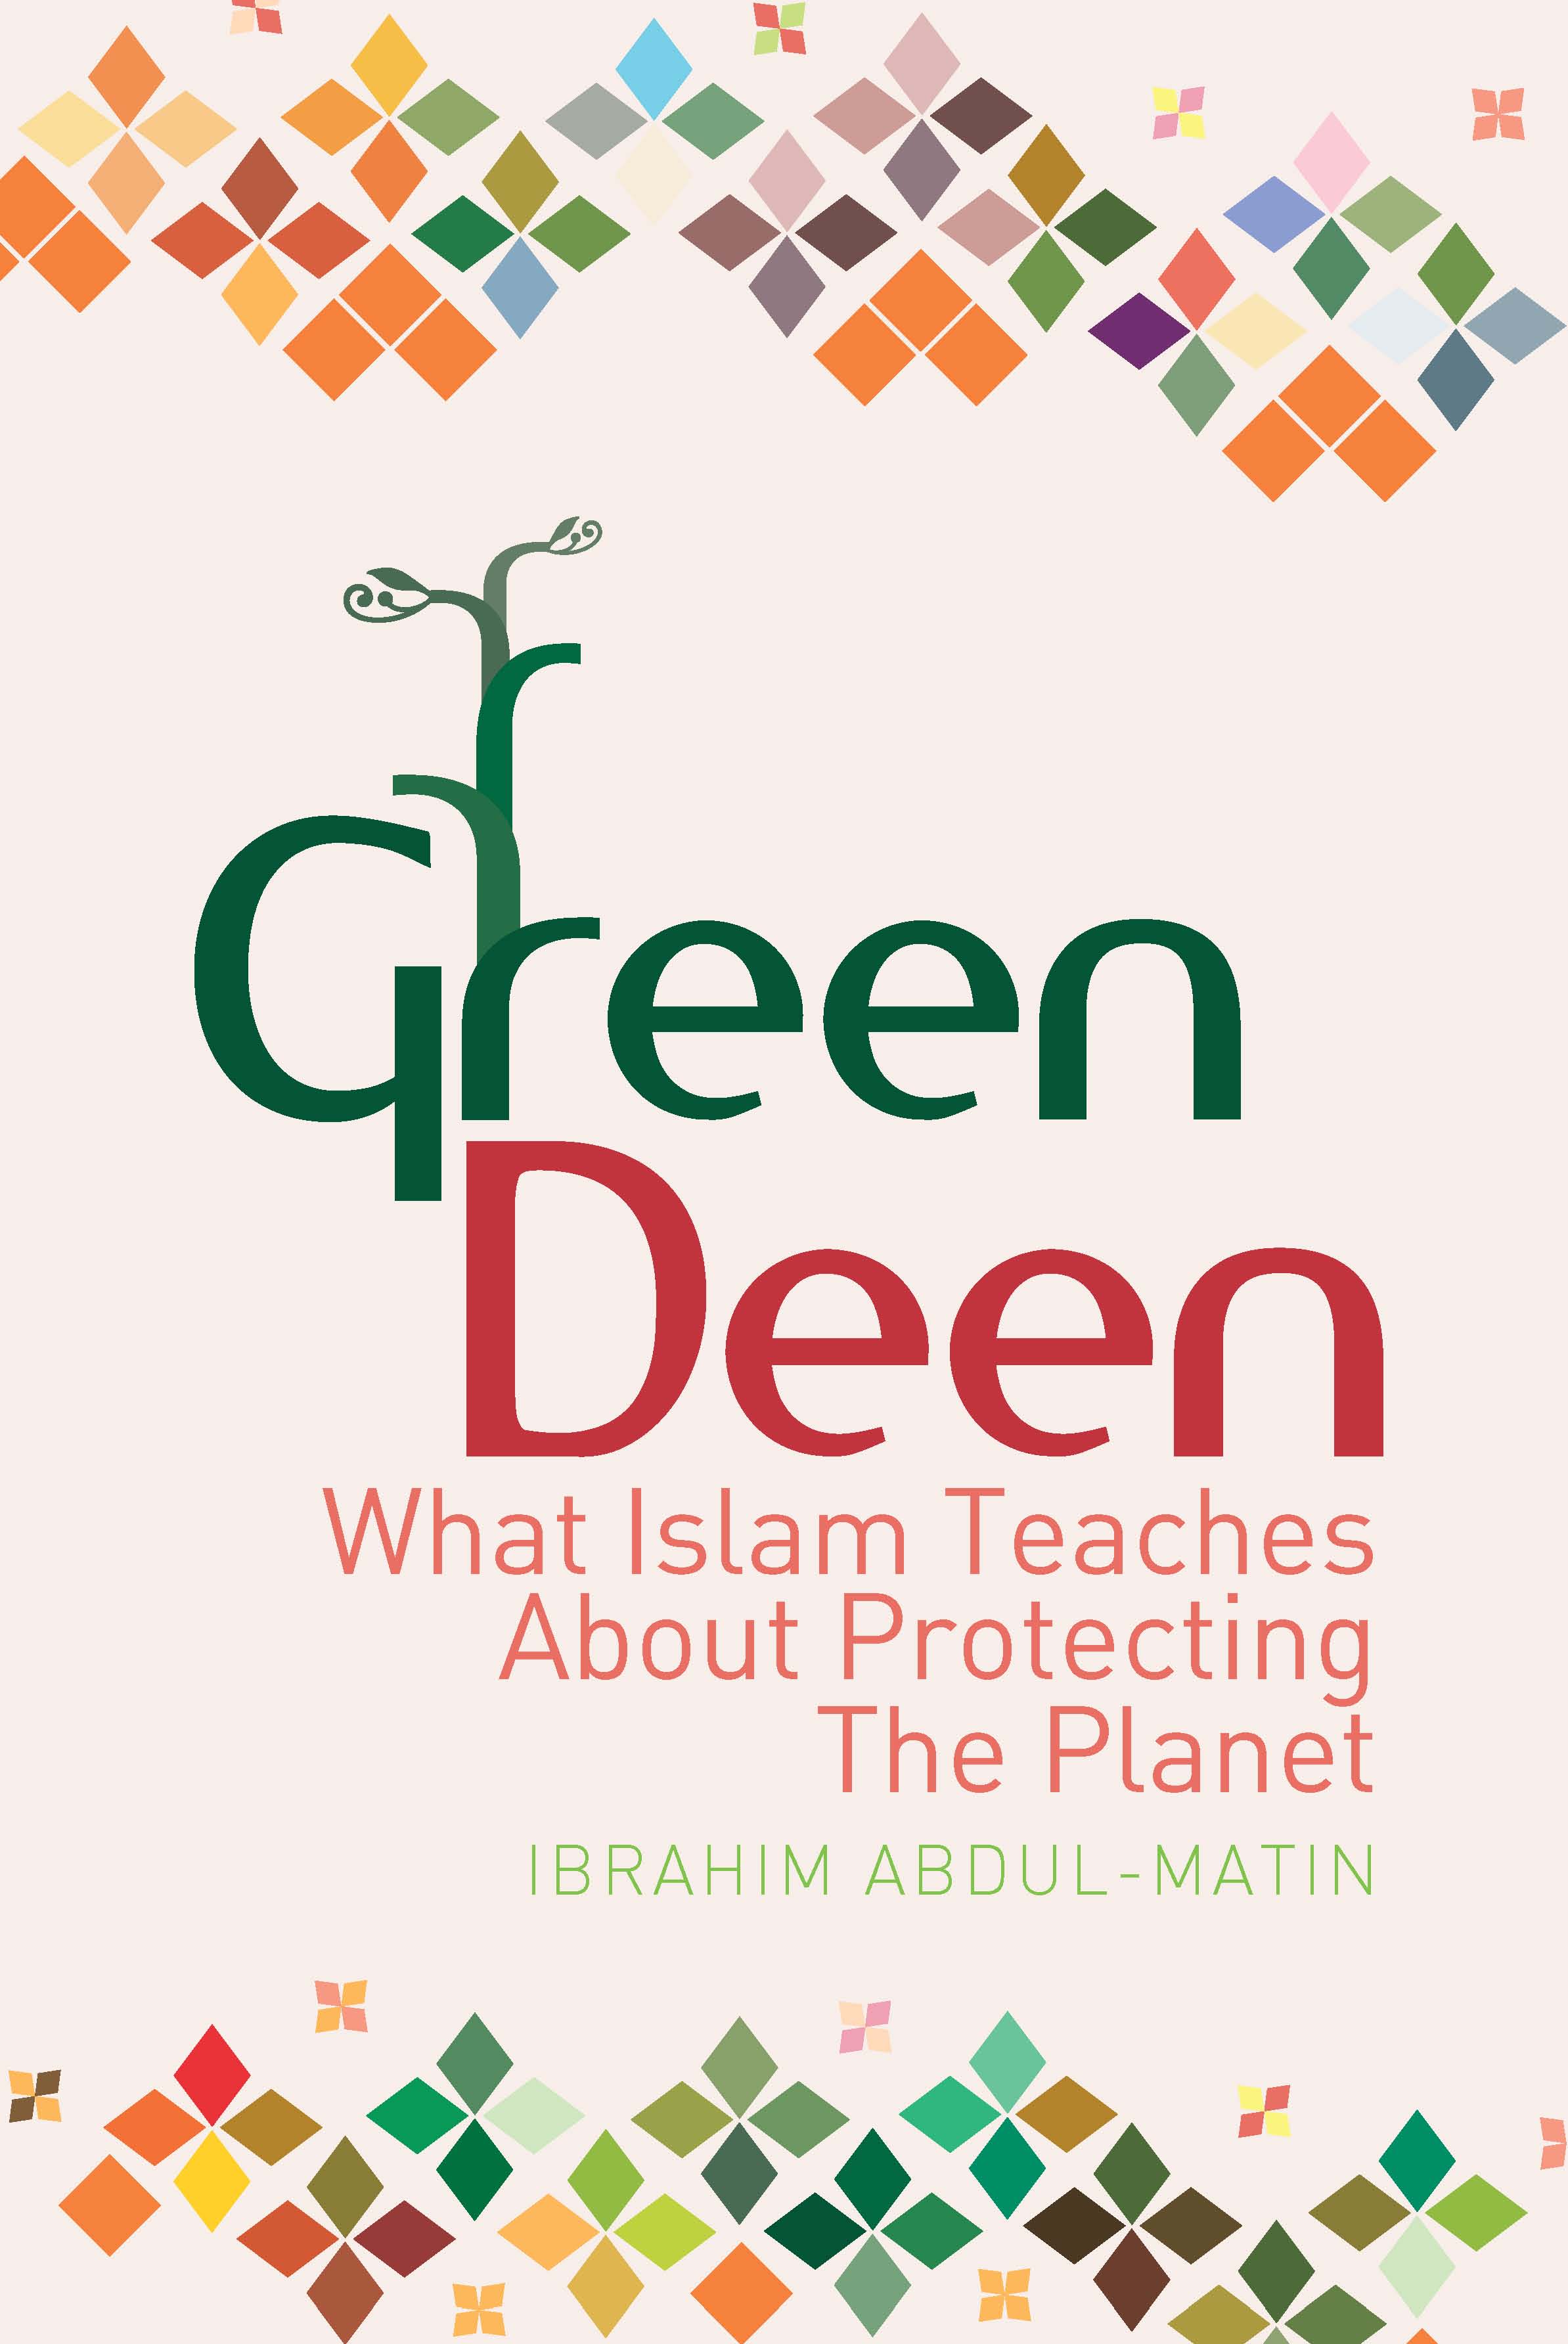 Green Deen (Book Review)